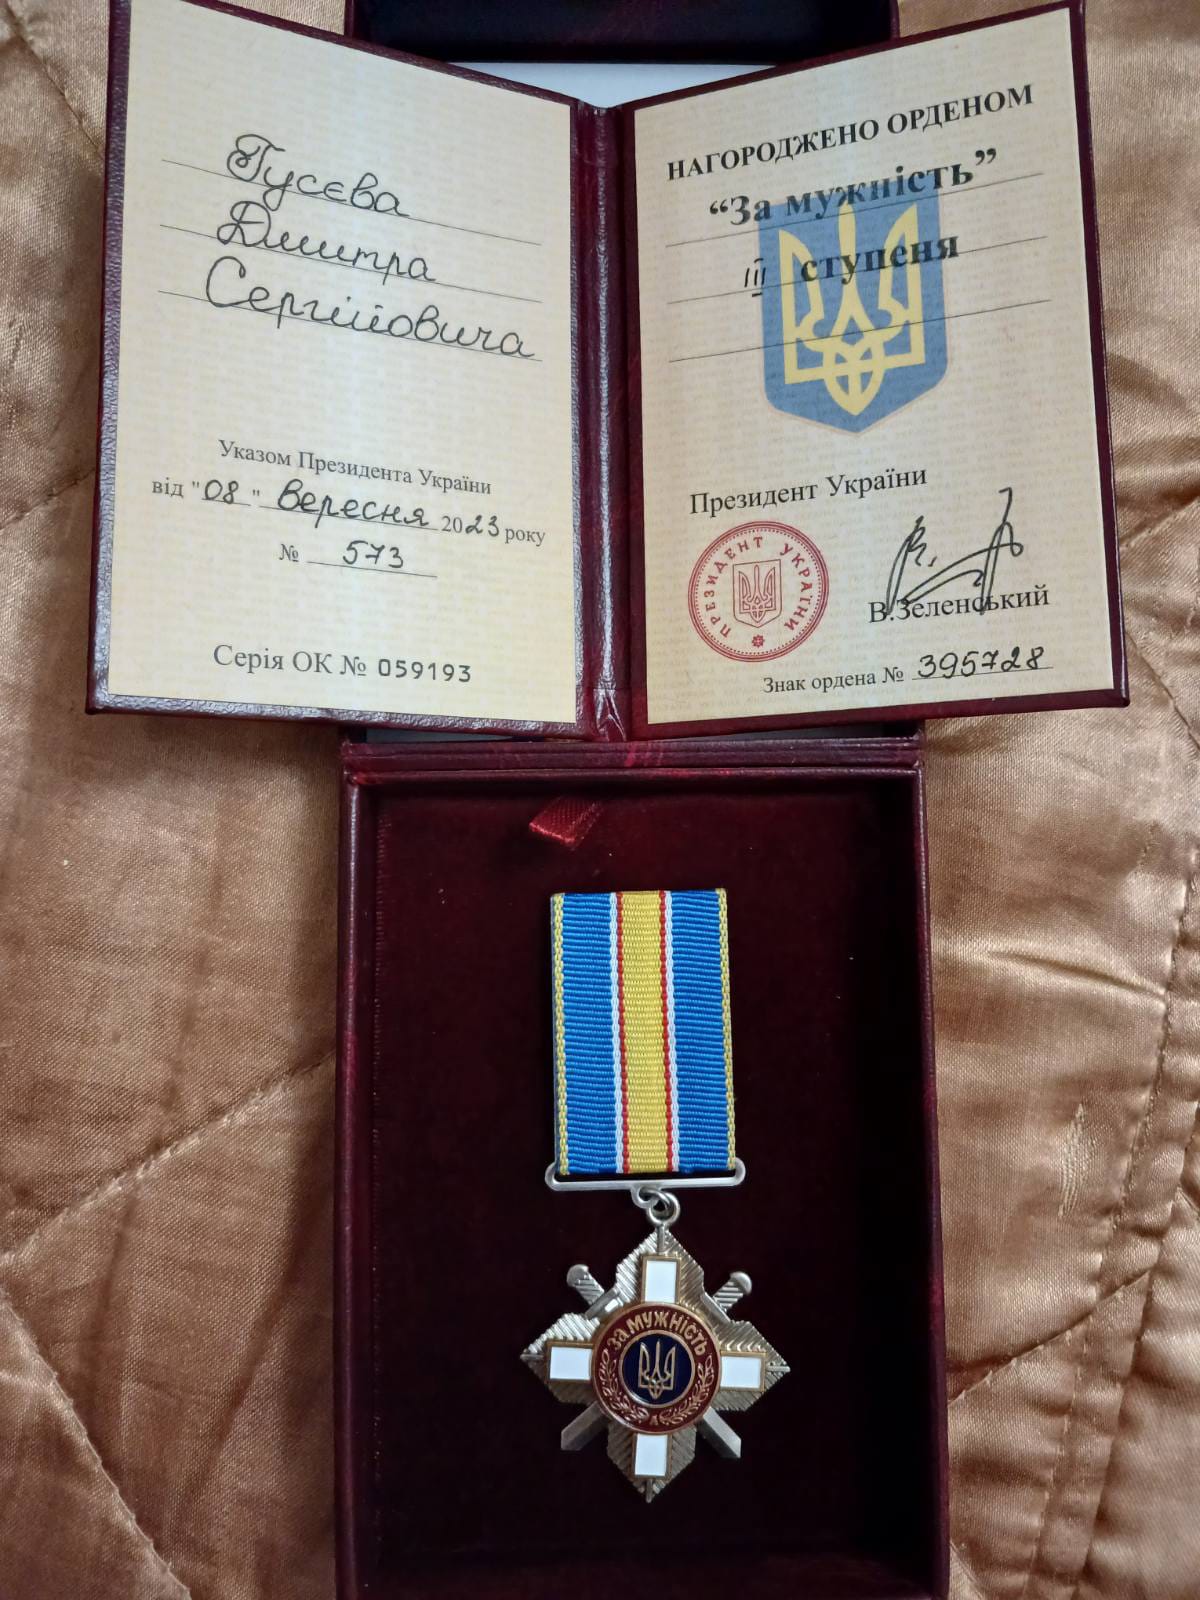 Мешканець Вінниччини нагороджений орденом «За Мужність» ІІІ ступеня